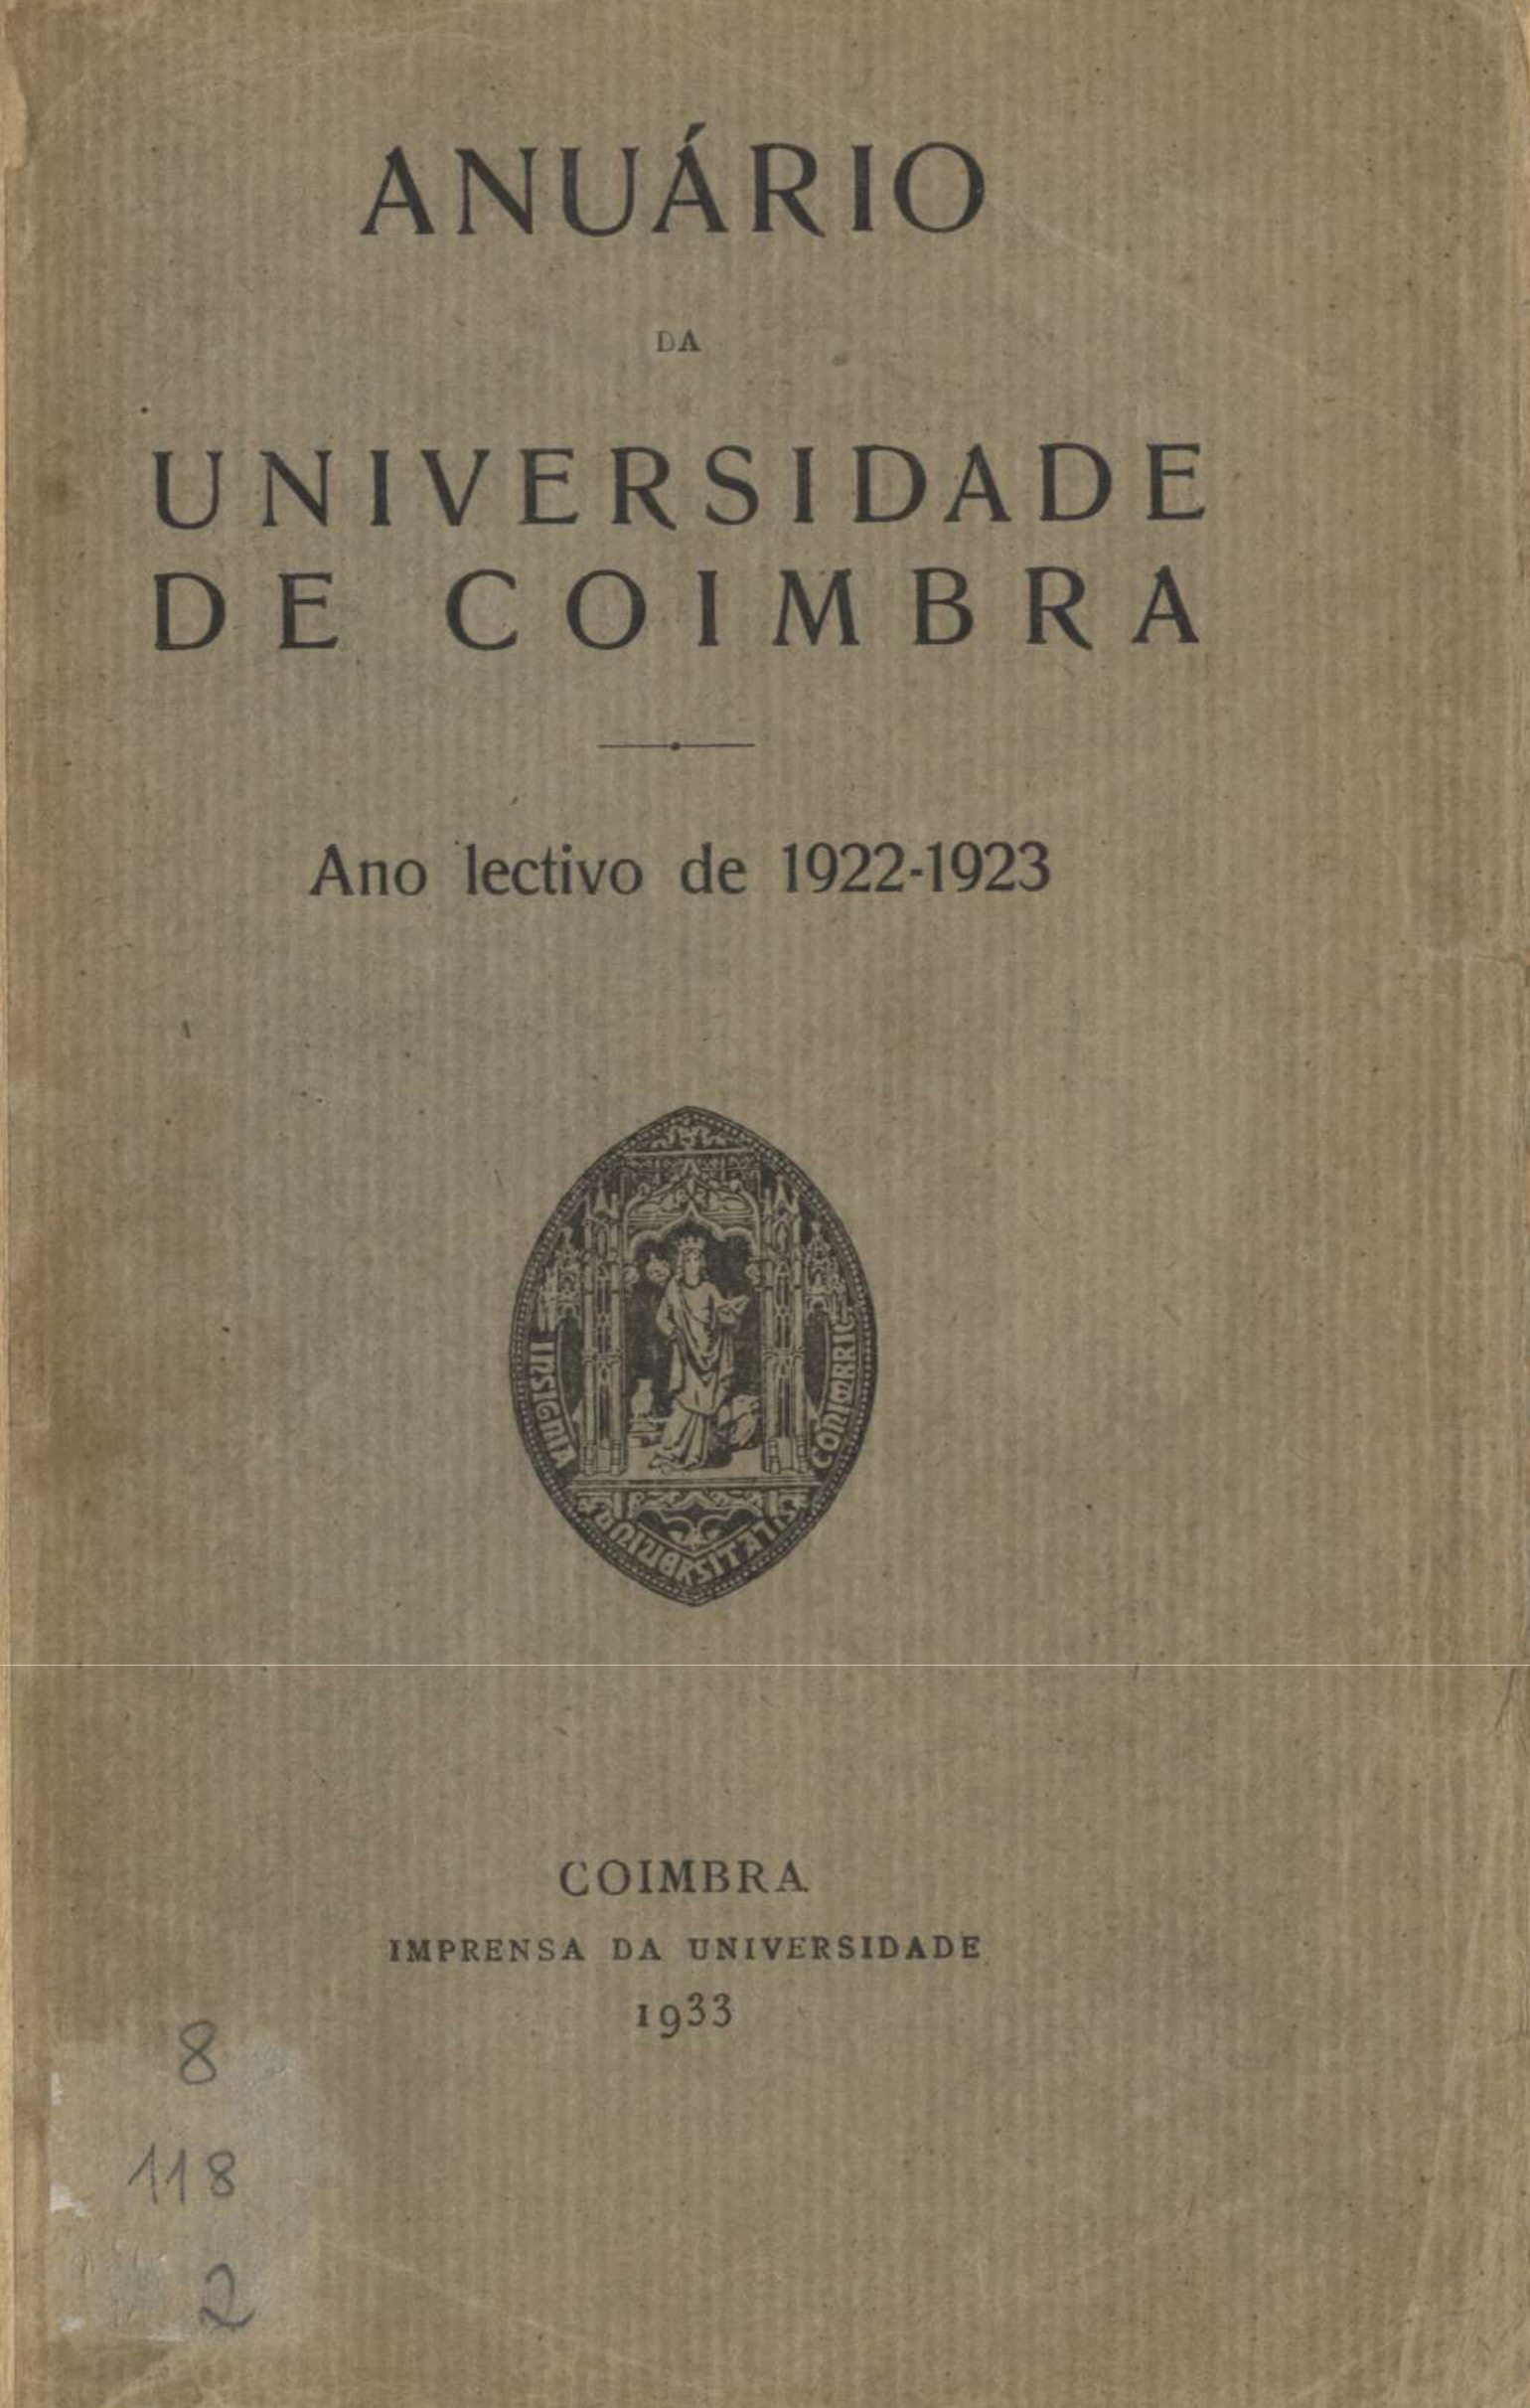 Anuário da Universidade de Coimbra